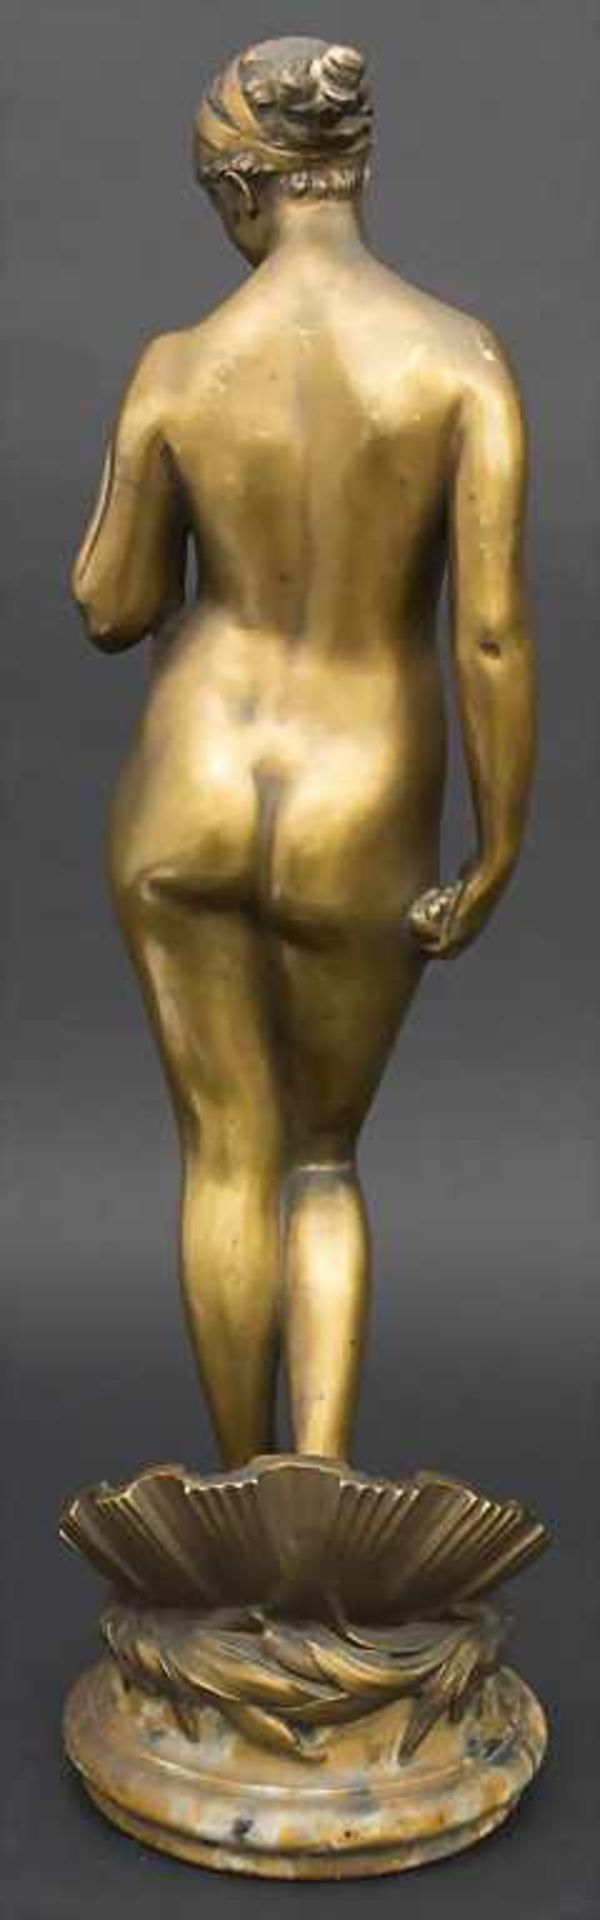 Marcel Rau 1886-1966, Die Geburt der Venus / The birth of Venus, Marcel Rau, 1917Material: Bronze, - Image 3 of 8